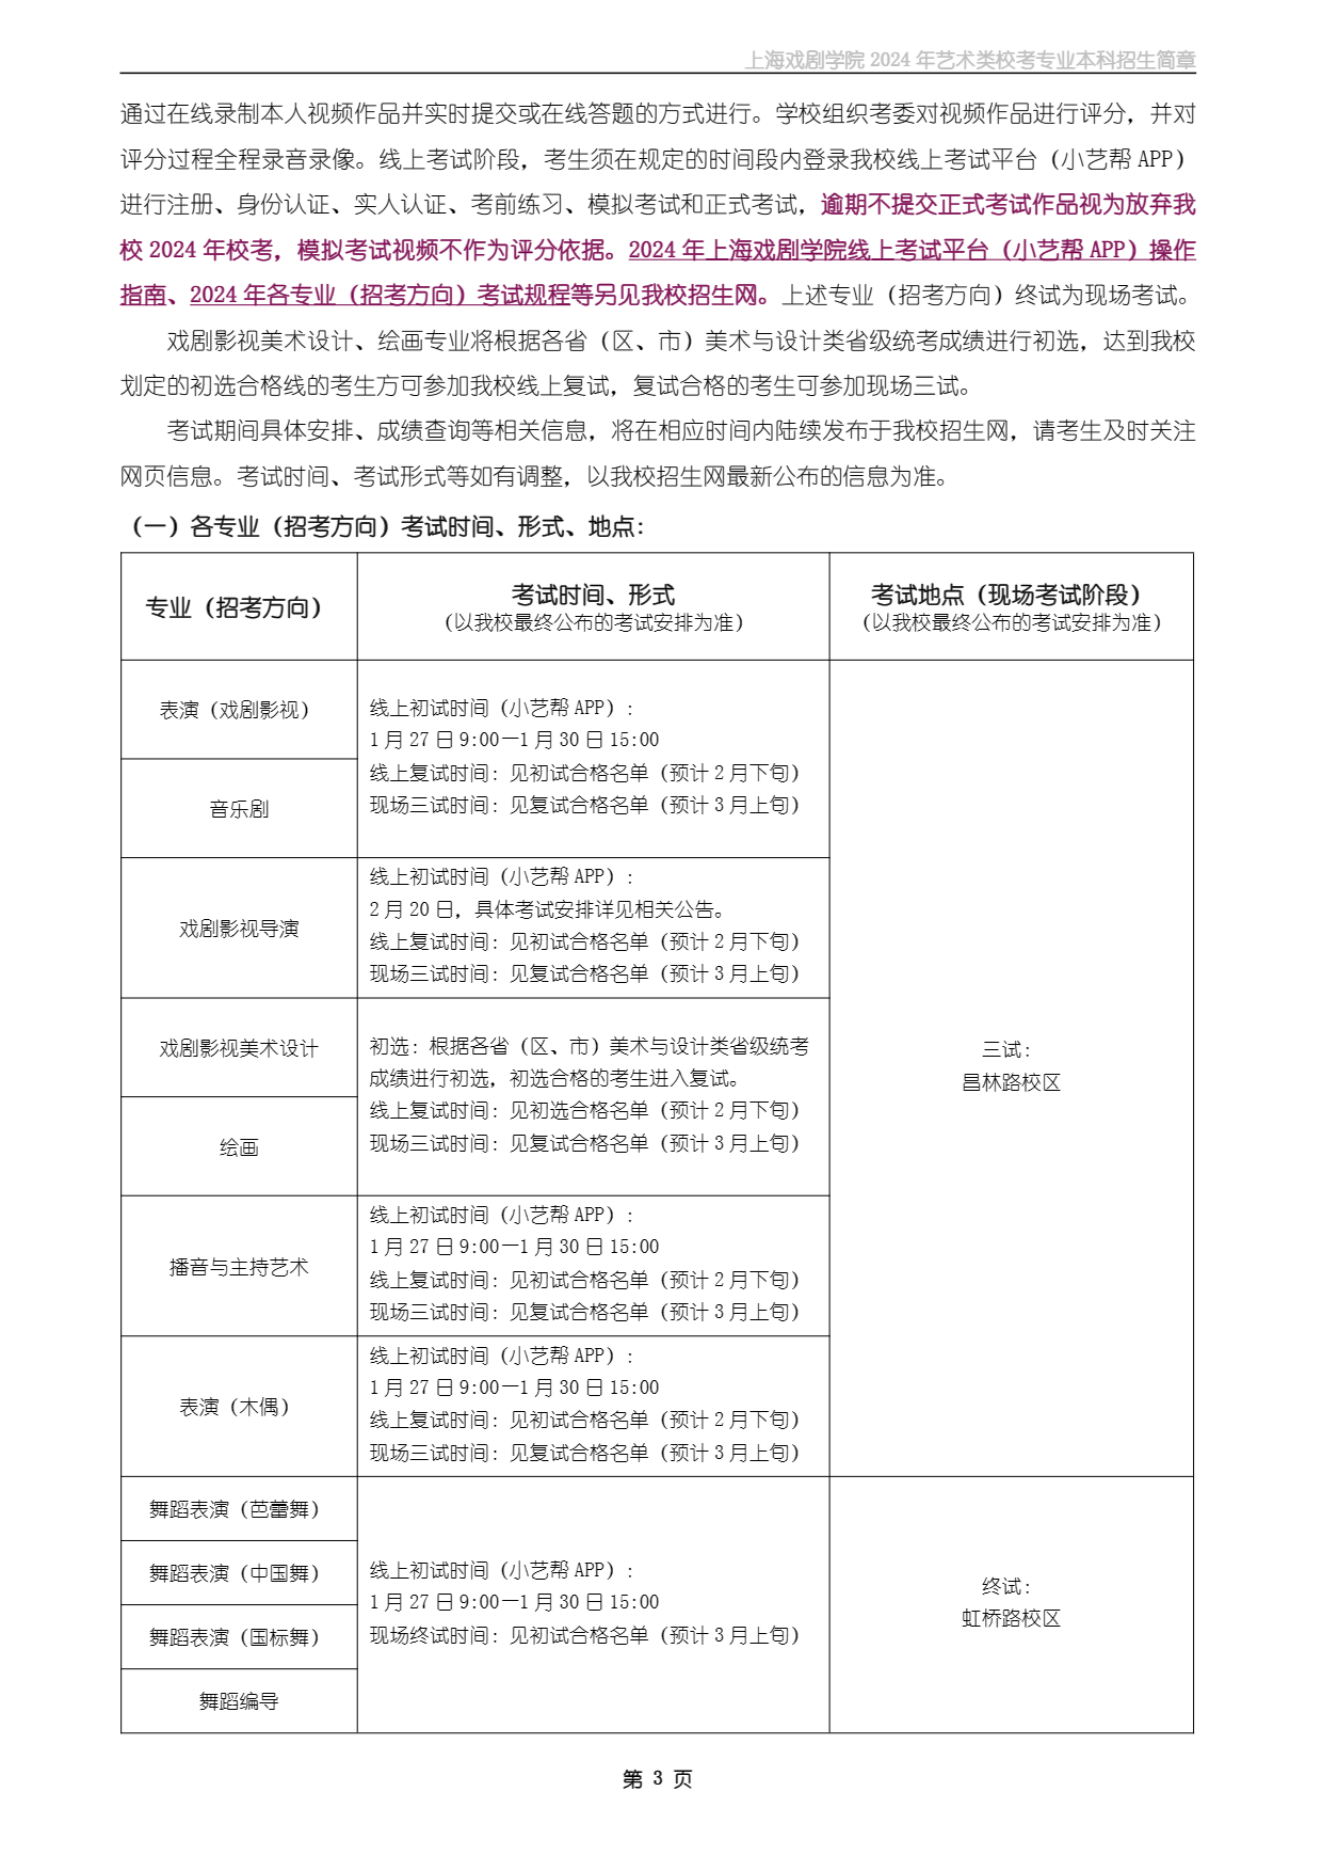 上海戏剧学院2024年艺术类校考专业本科招生简章_02.png